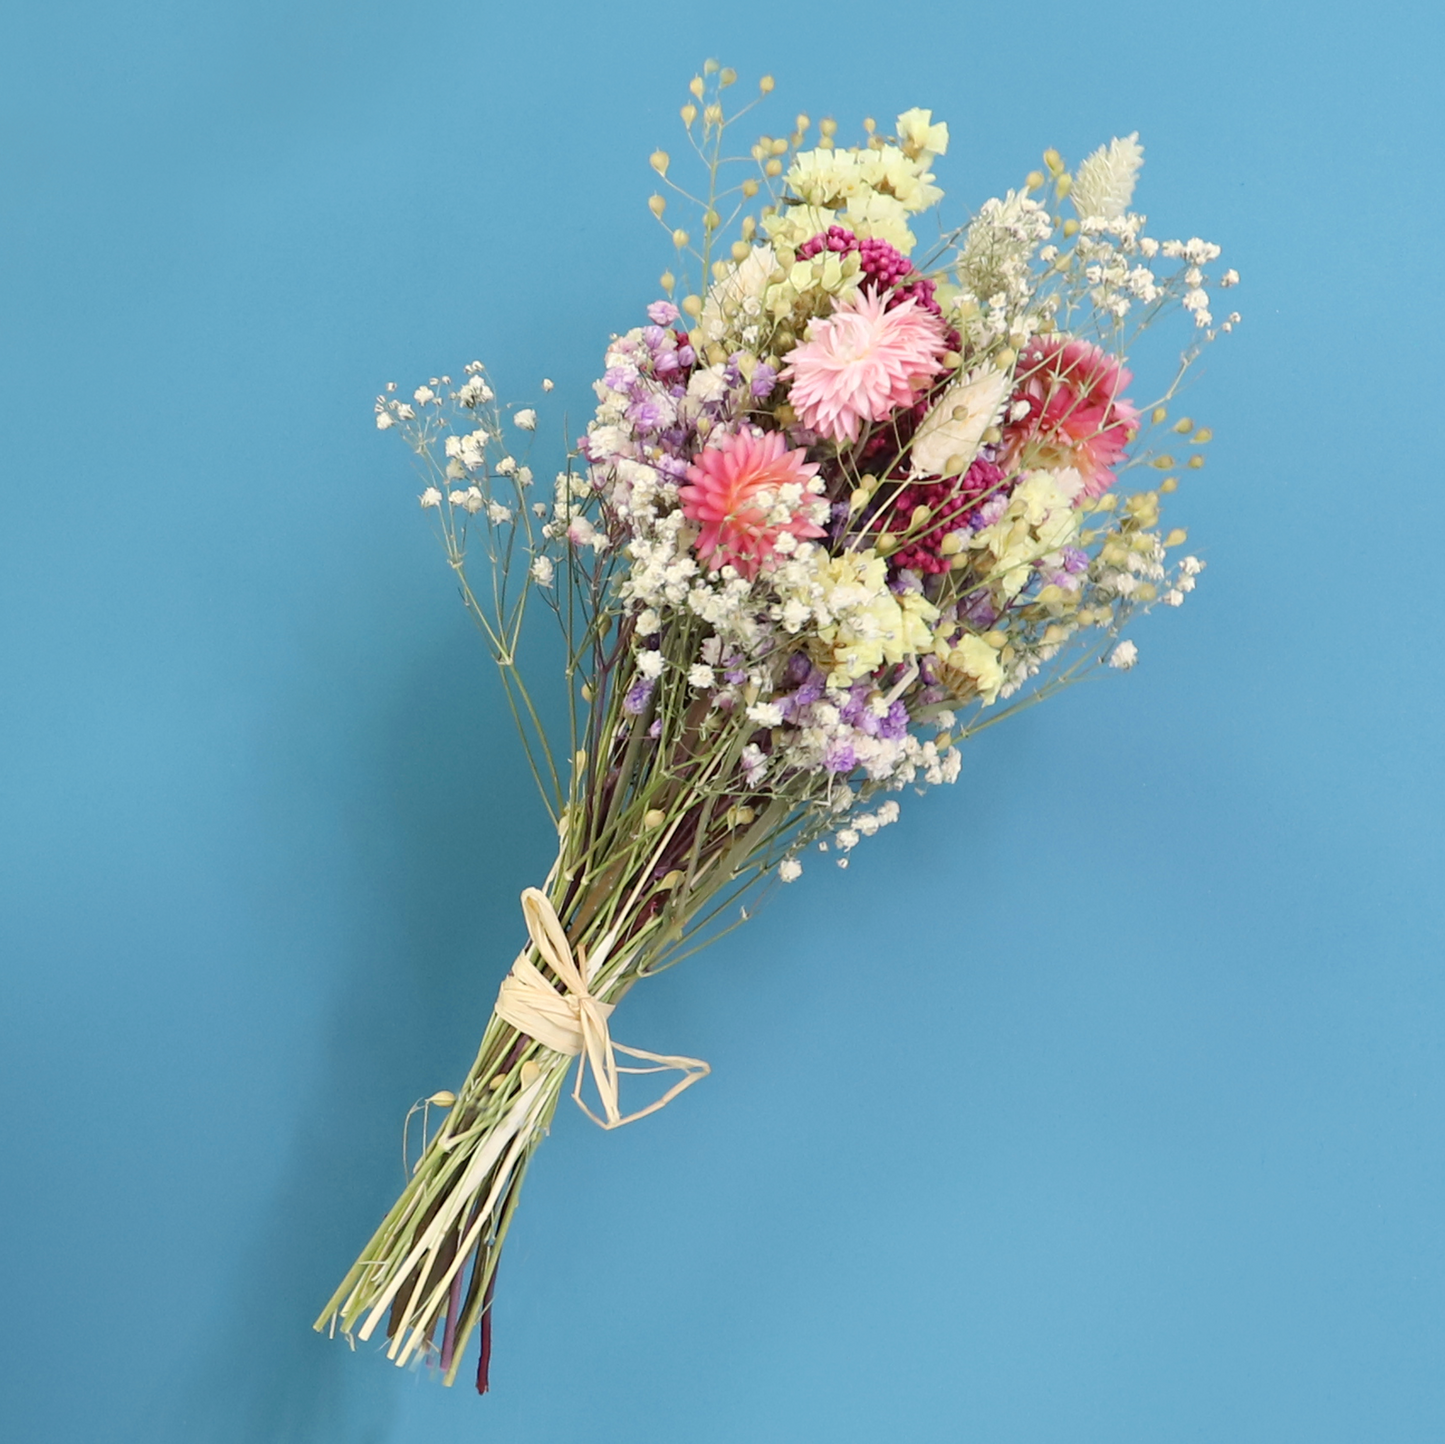 Bunter Trockenblumenstrauß "Frühlingserwachen" - Getrocknete Blumen als Deko und Geschenk zum Muttertag